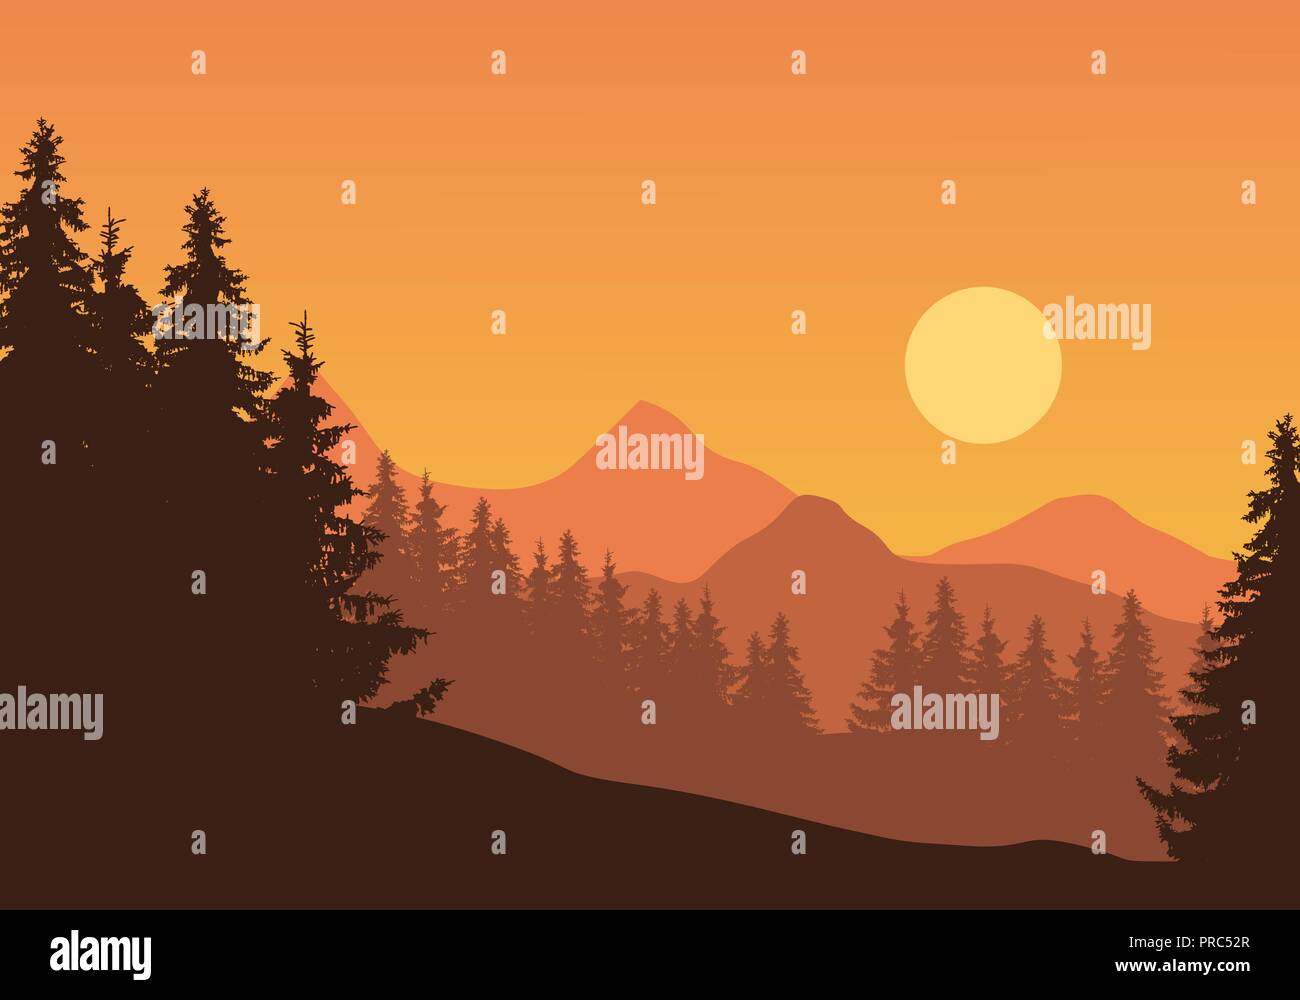 Realistische Darstellung der Berglandschaft mit Nadelwald und Bäume, unter orange Himmel mit Sonne-Vektor Stock Vektor